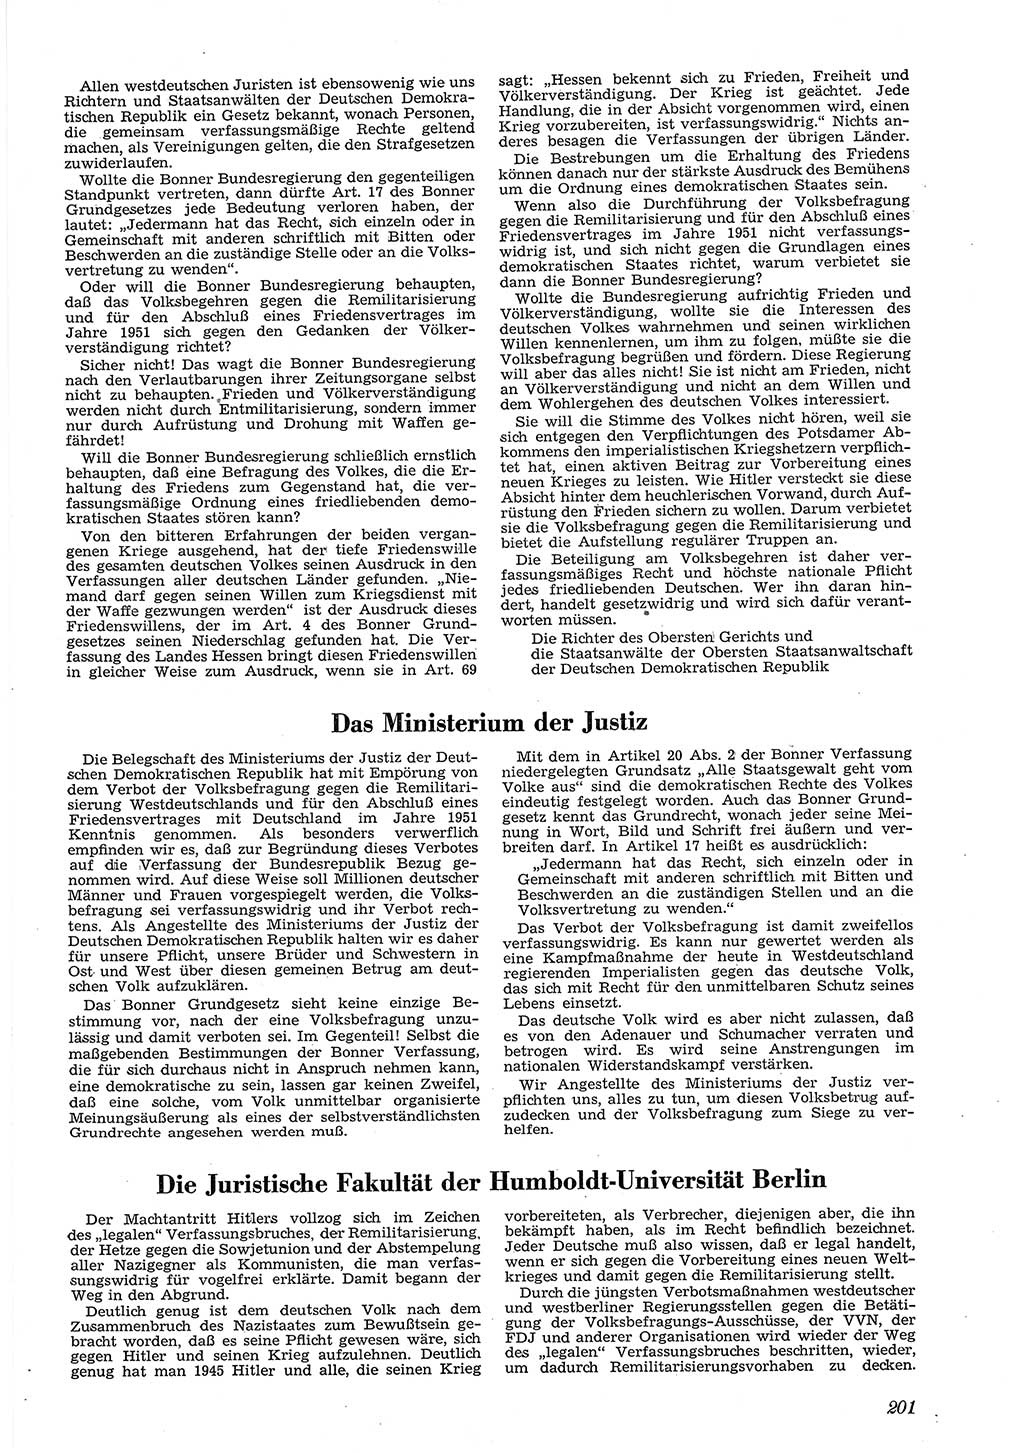 Neue Justiz (NJ), Zeitschrift für Recht und Rechtswissenschaft [Deutsche Demokratische Republik (DDR)], 5. Jahrgang 1951, Seite 201 (NJ DDR 1951, S. 201)